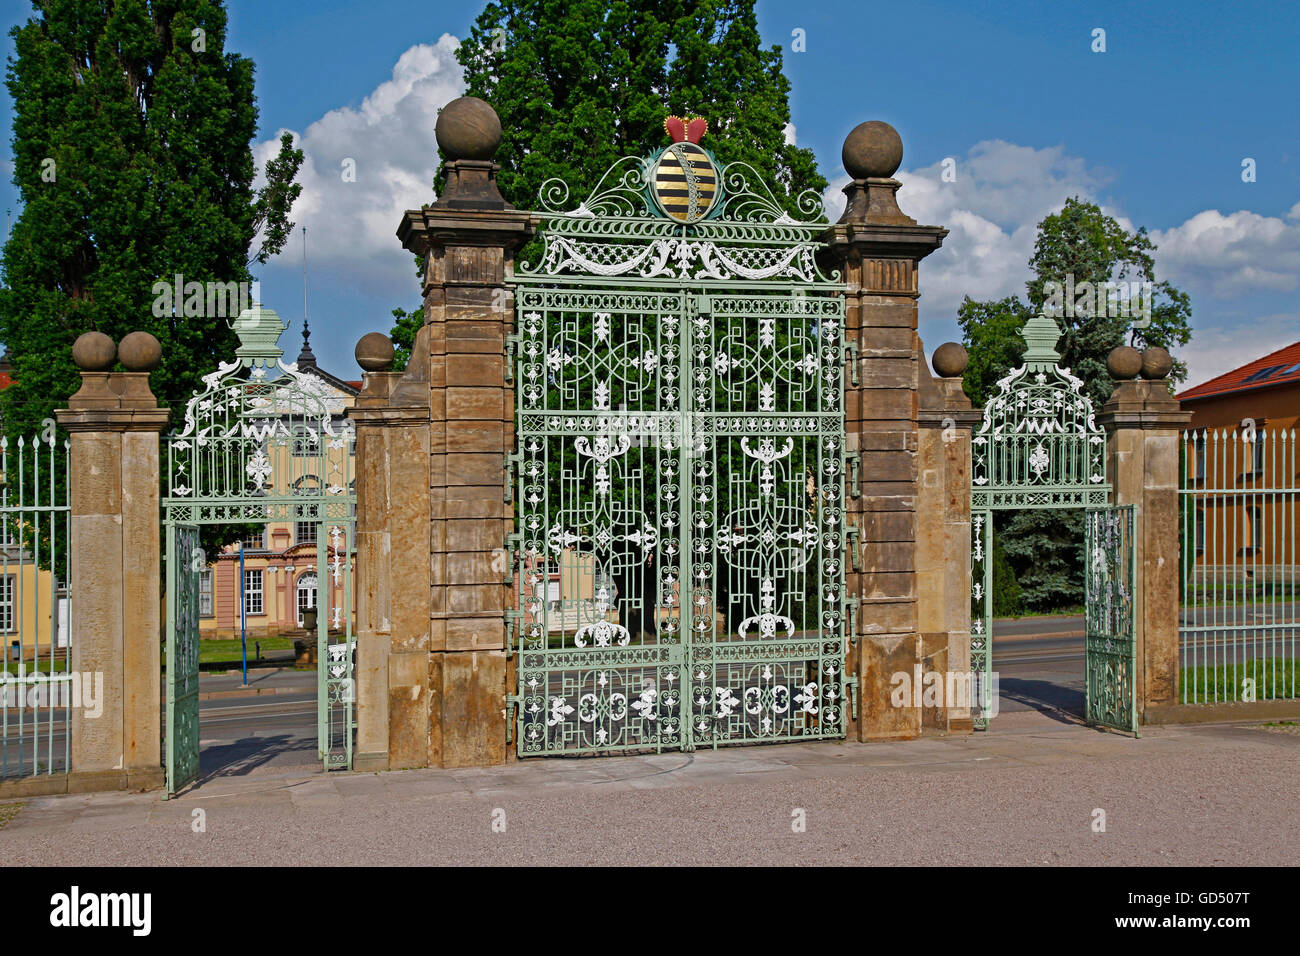 Cancello di ferro, ingresso al giardino barocco e l'Orangerie del castello di Friedenstein, Gotha, Turingia, Germania Foto Stock